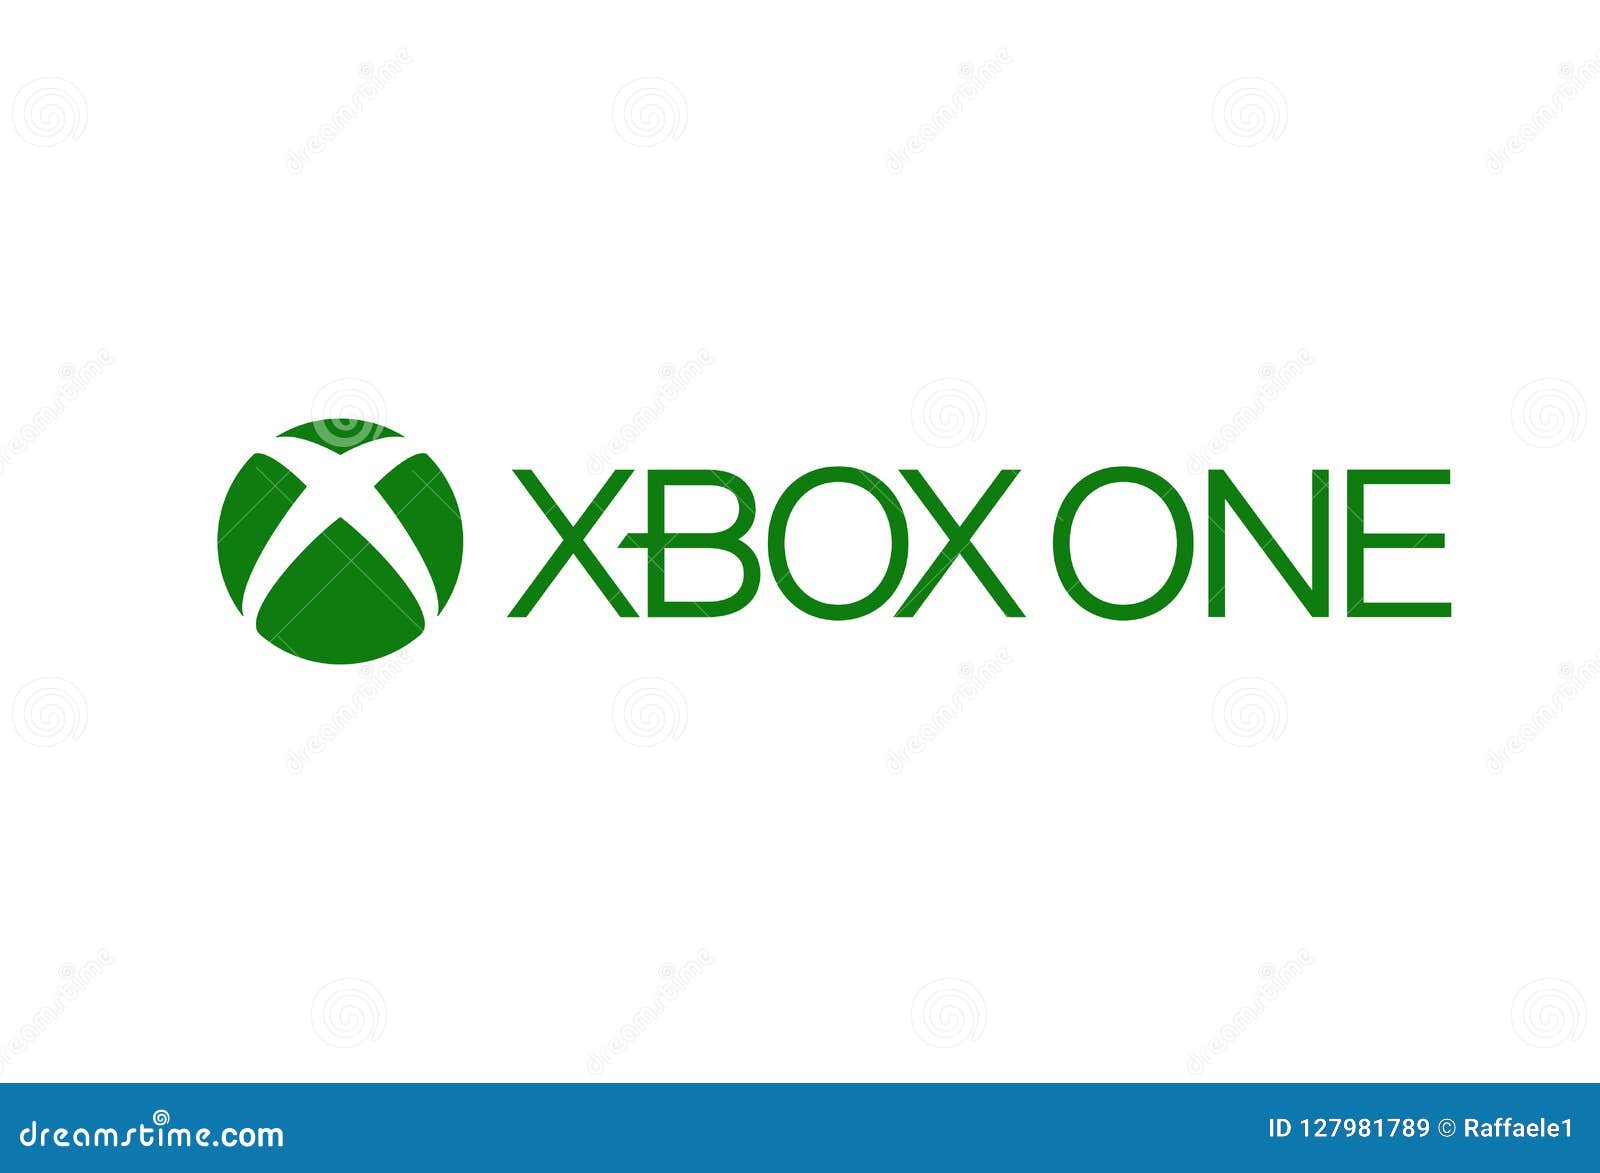 Logo Xbox One với thiết kế đẹp mắt sẽ làm hài lòng bất kỳ fan hâm mộ nào. Hãy để hình ảnh thể hiện độ tinh tế và sáng tạo của logo này.